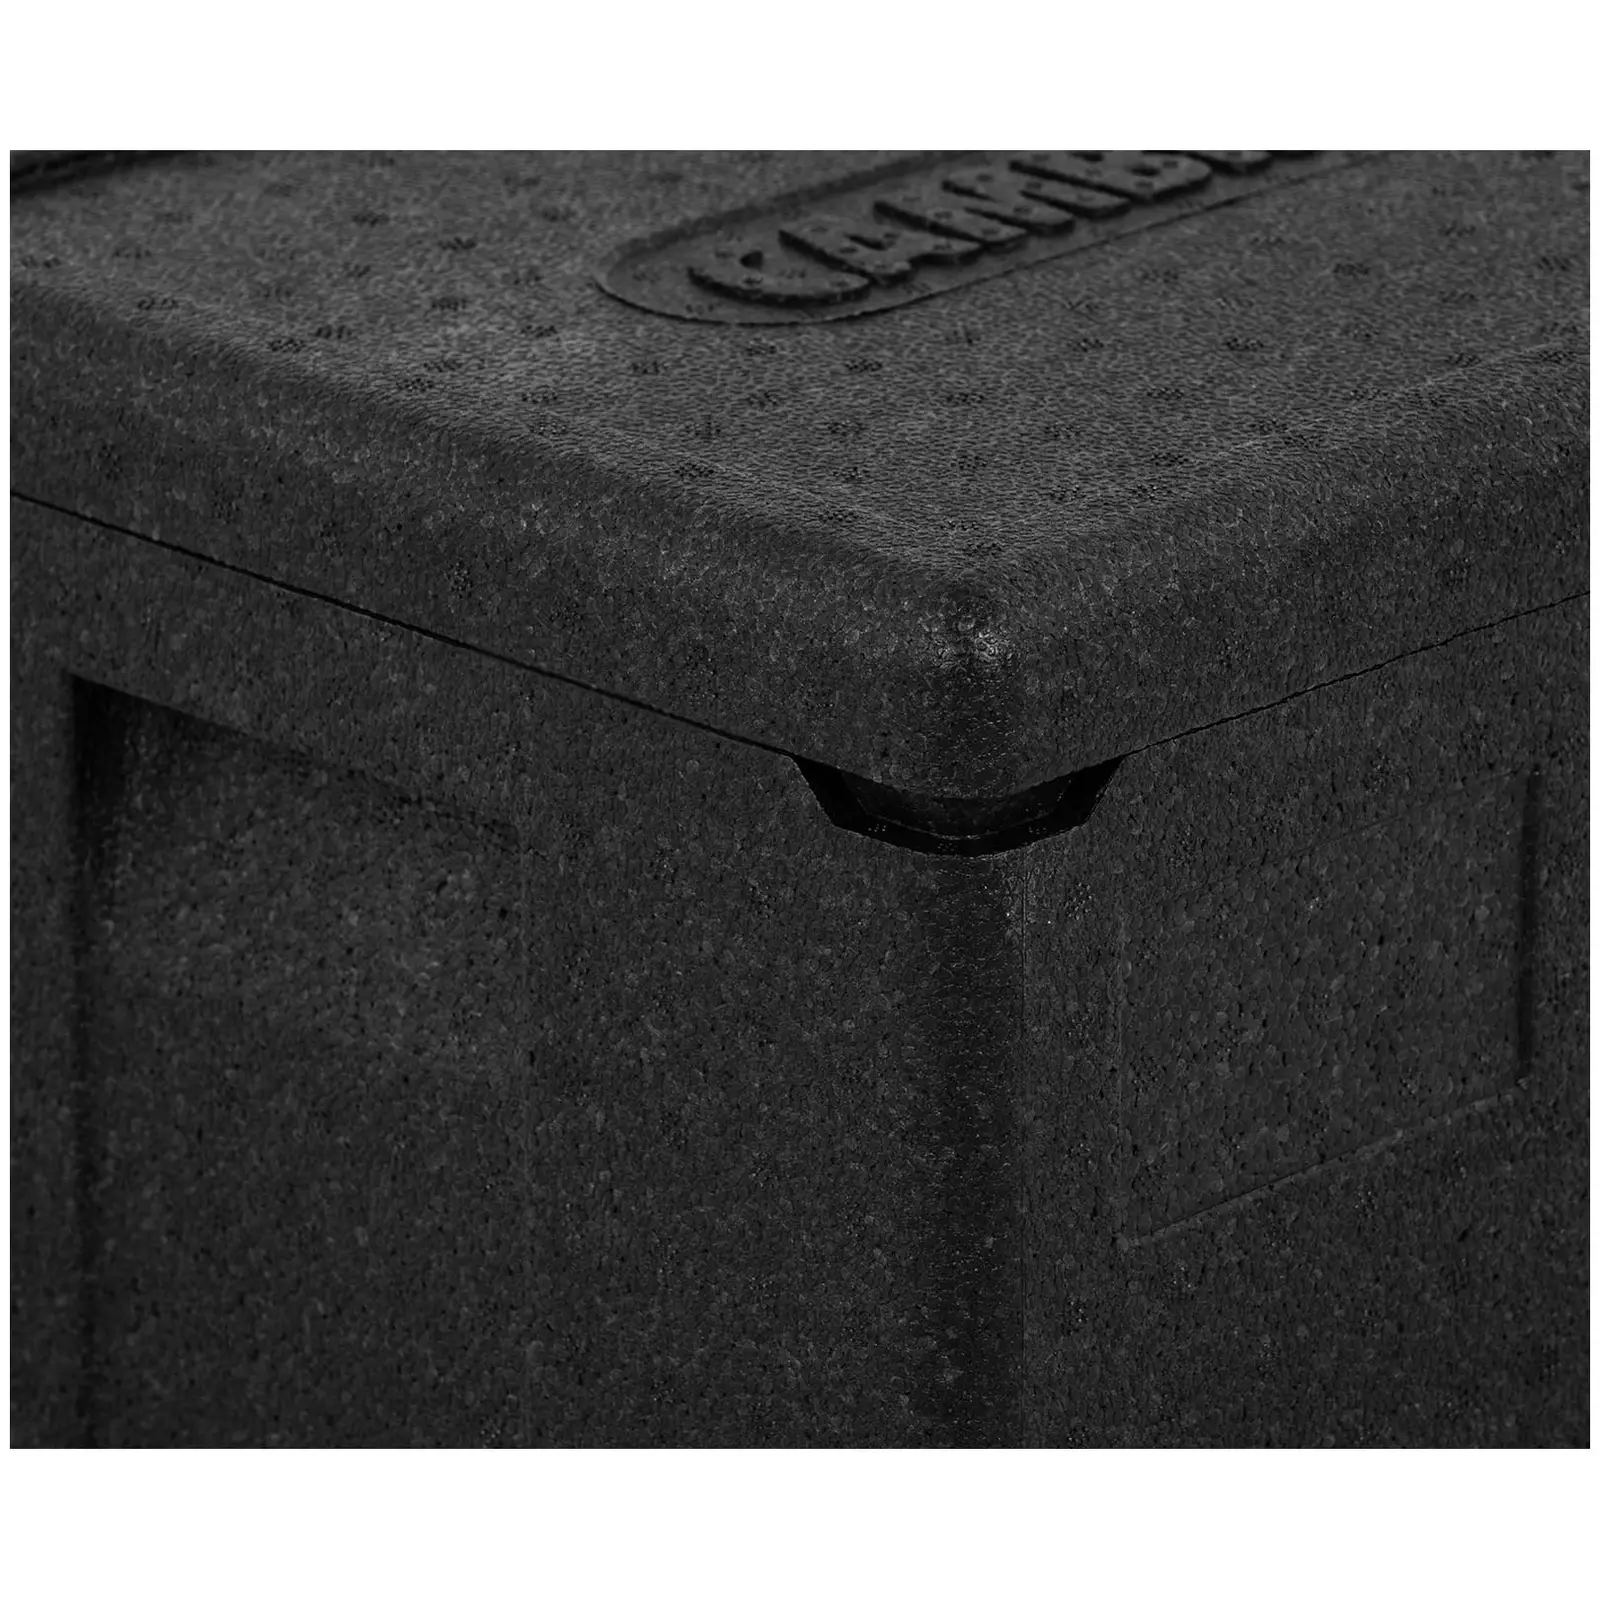 Box termico per alimenti - Inserimento dall'alto - Per contenitori GN 1/2 (profondità 20 cm)